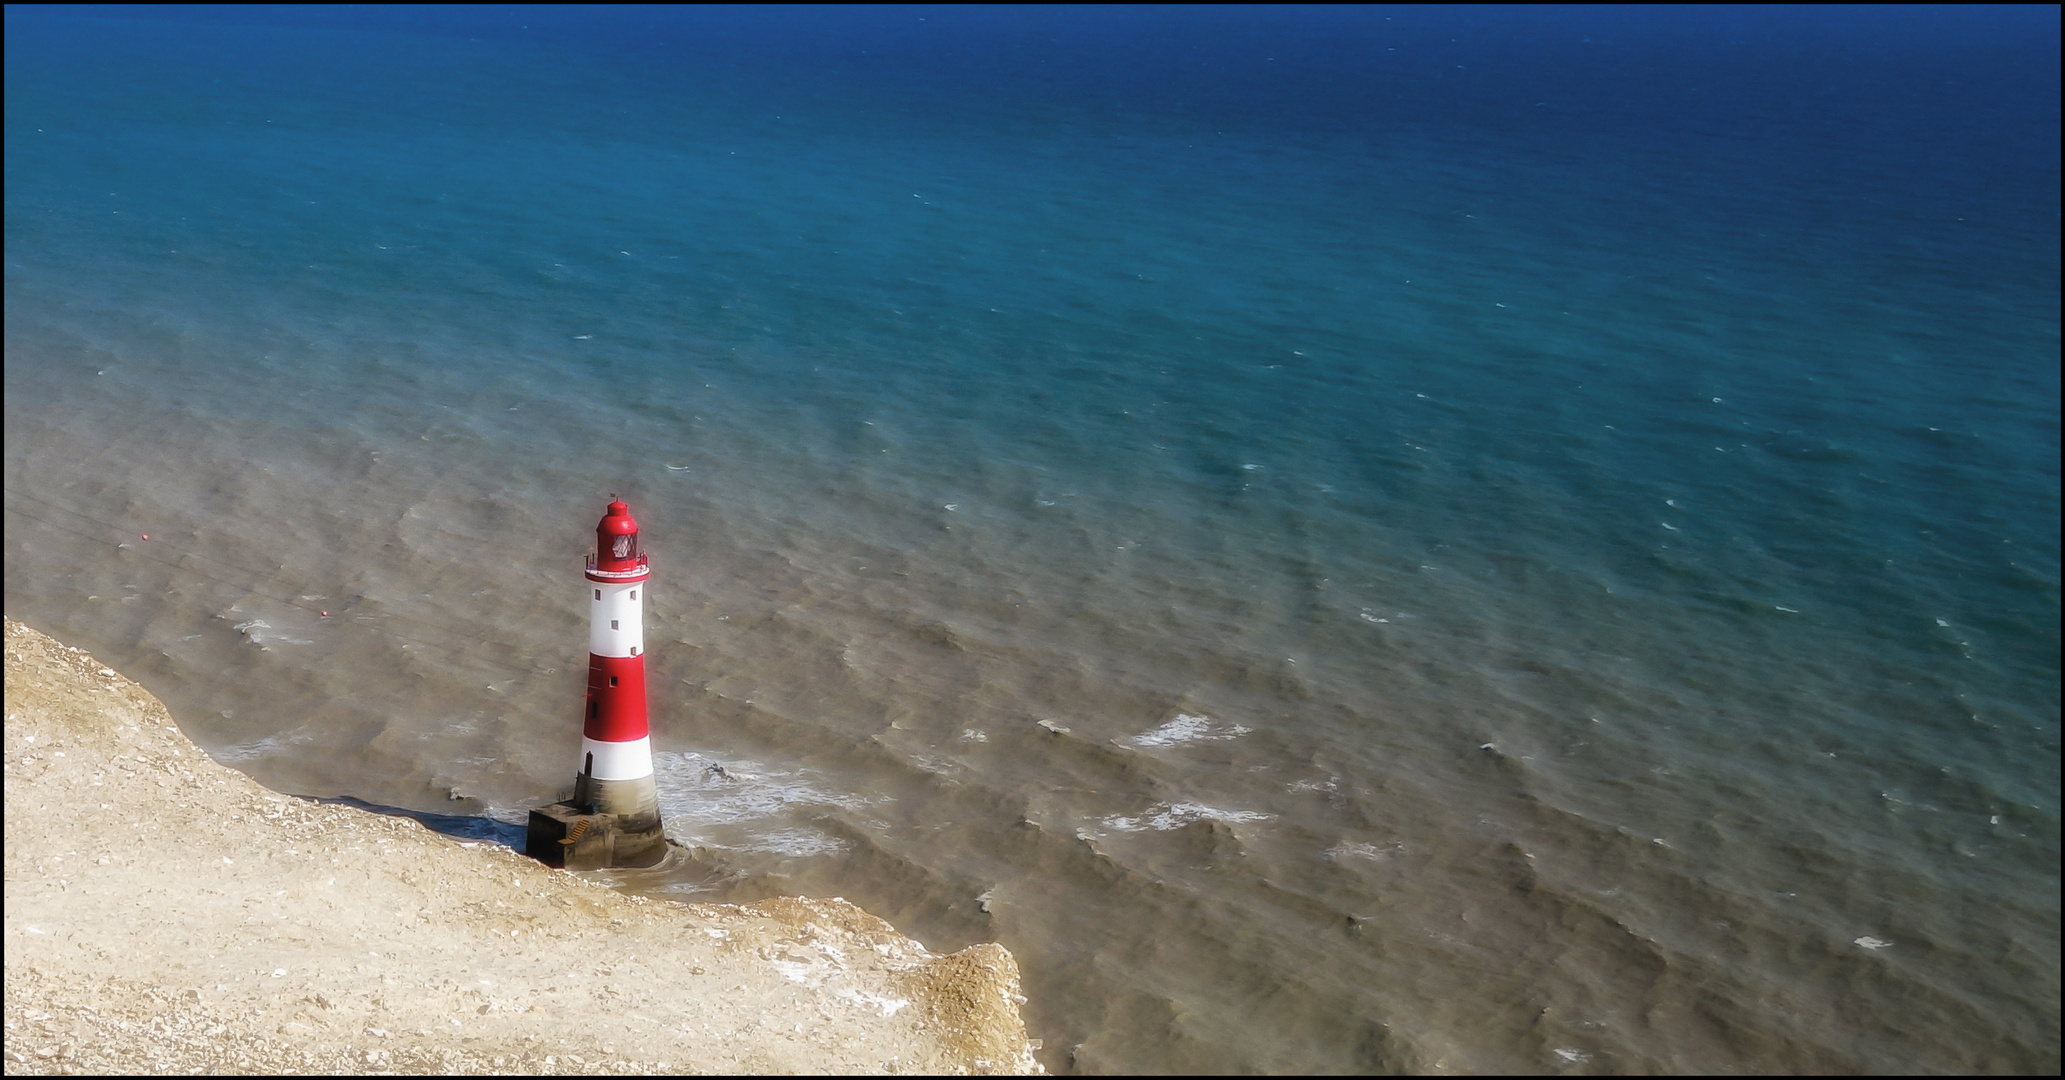 Beachy head lighthouse near Eastbourne